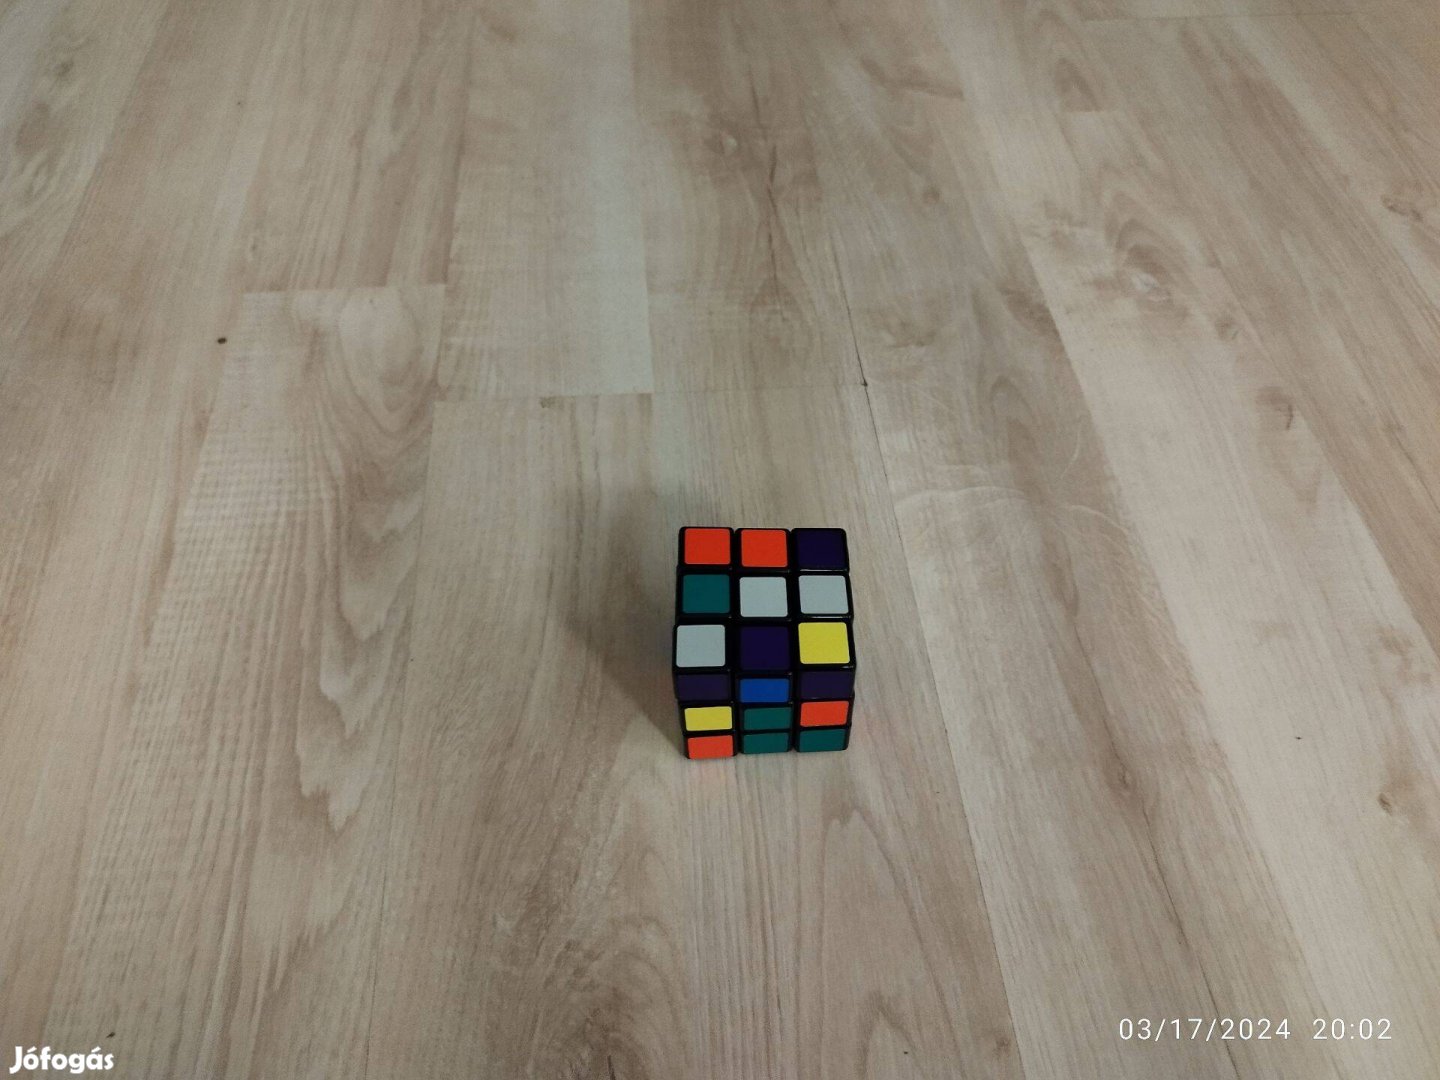 2 db Rubik kocka